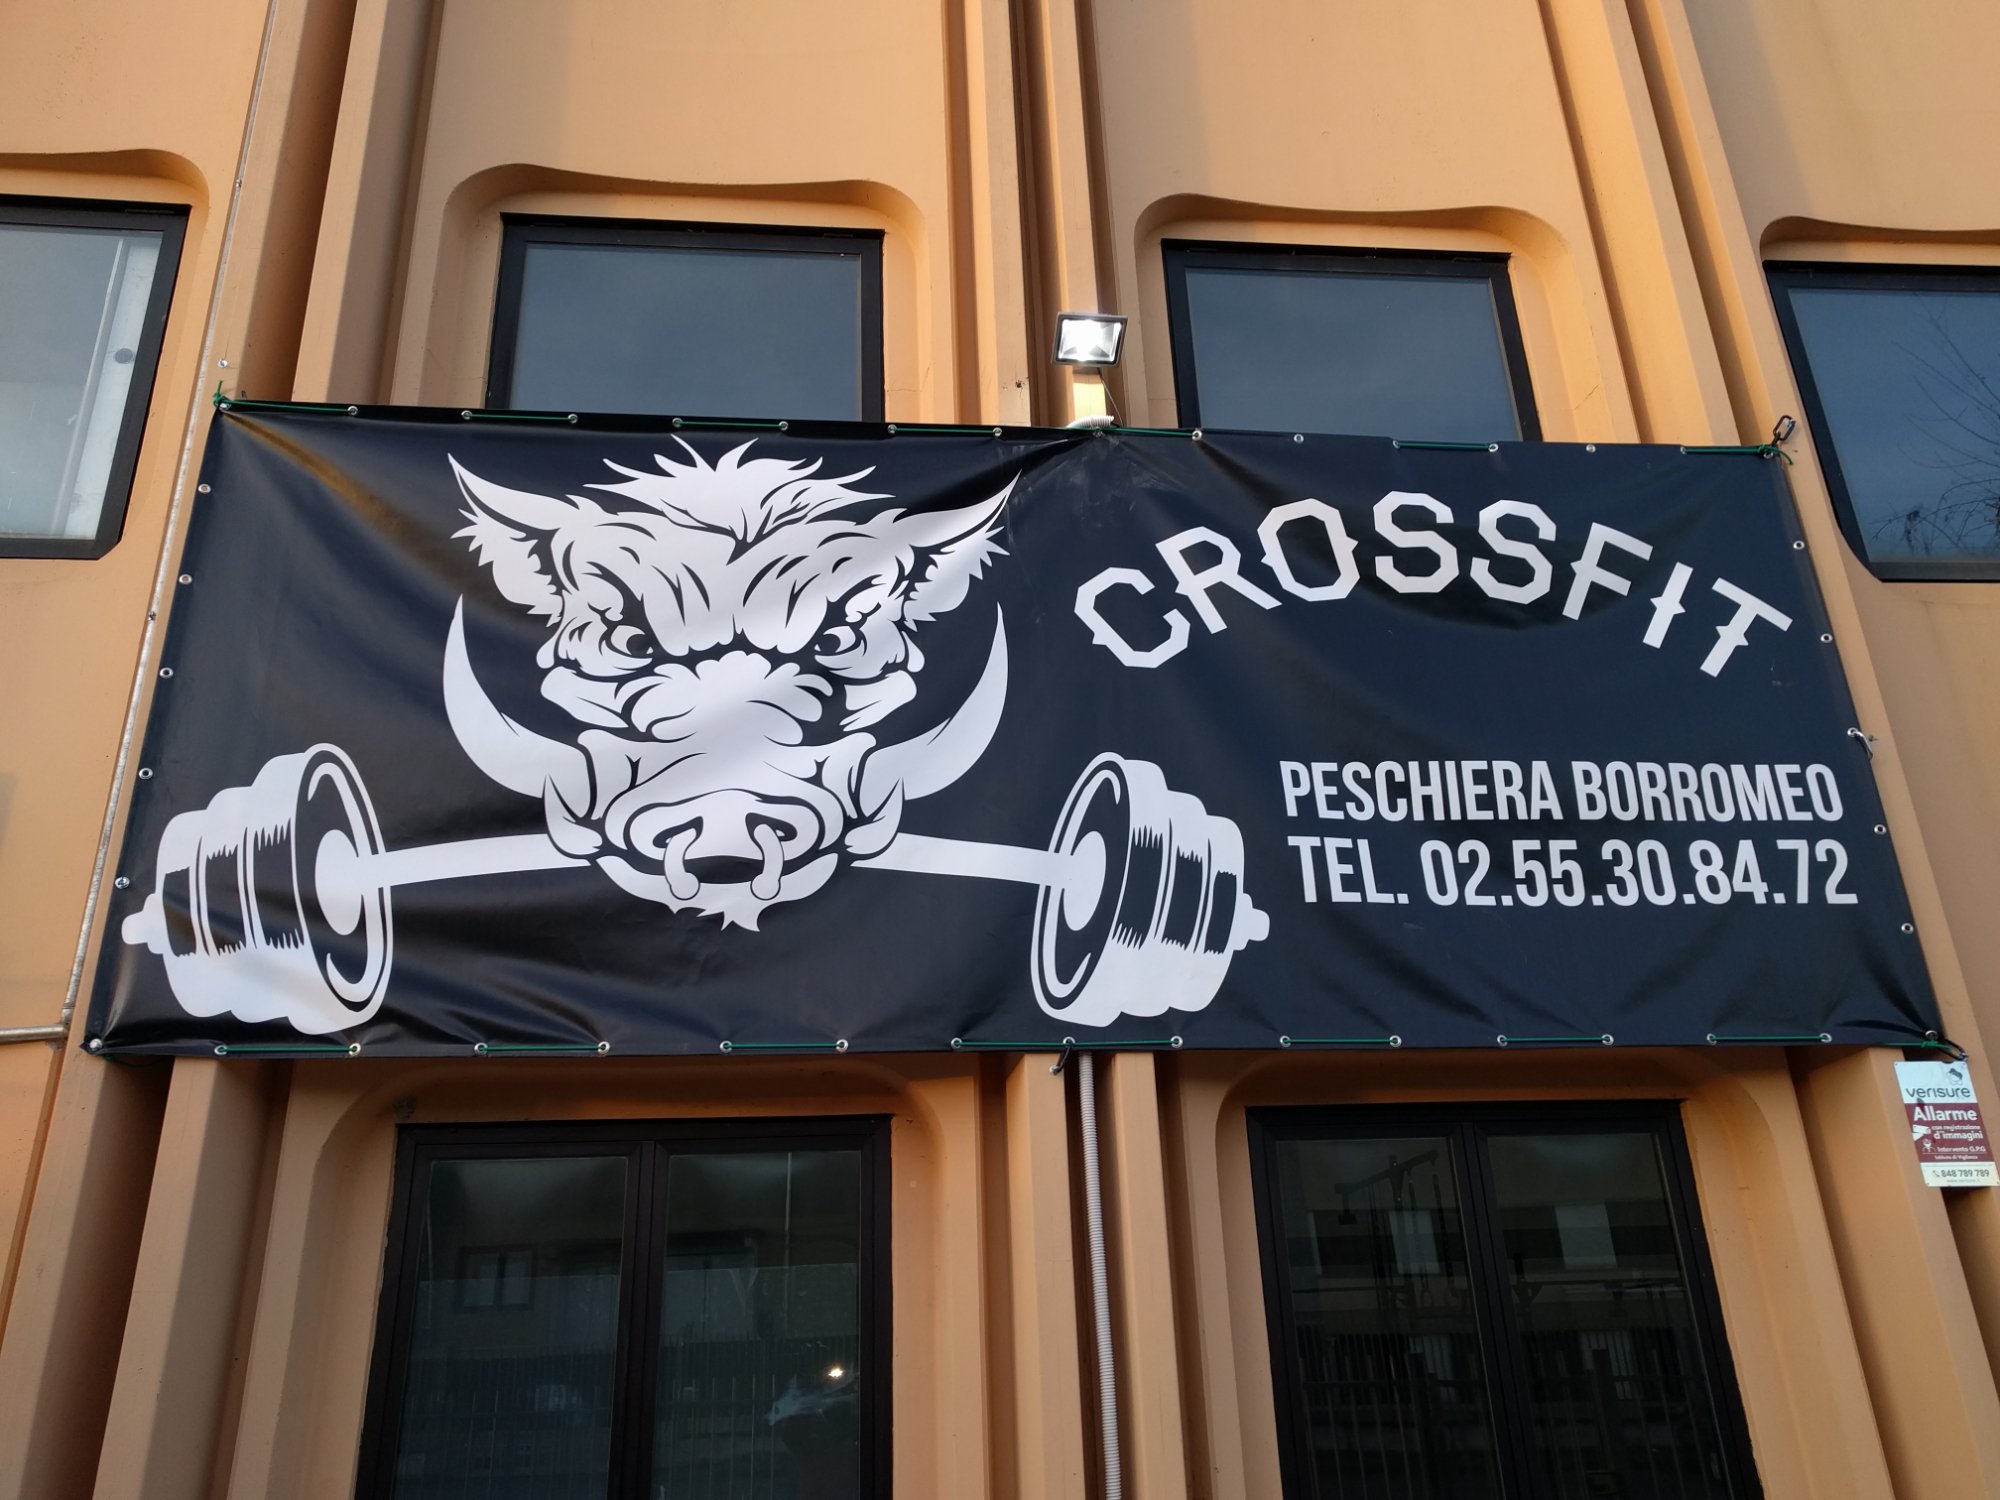 CrossFit Peschiera Borromeo